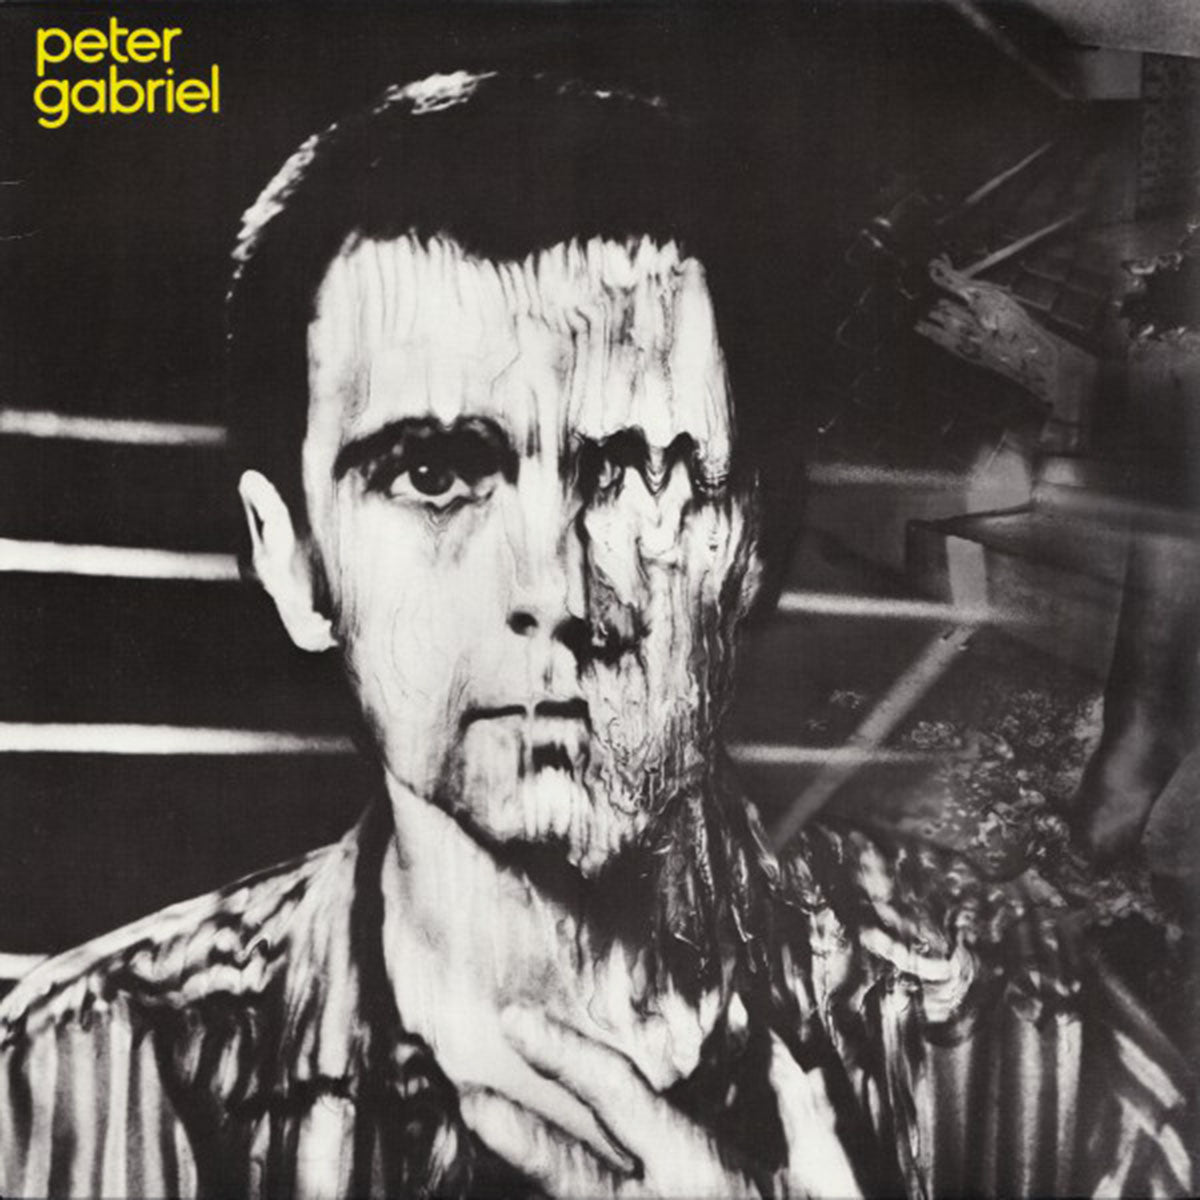 Peter Gabriel – Peter Gabriel - 1980 in Shrinkwrap!